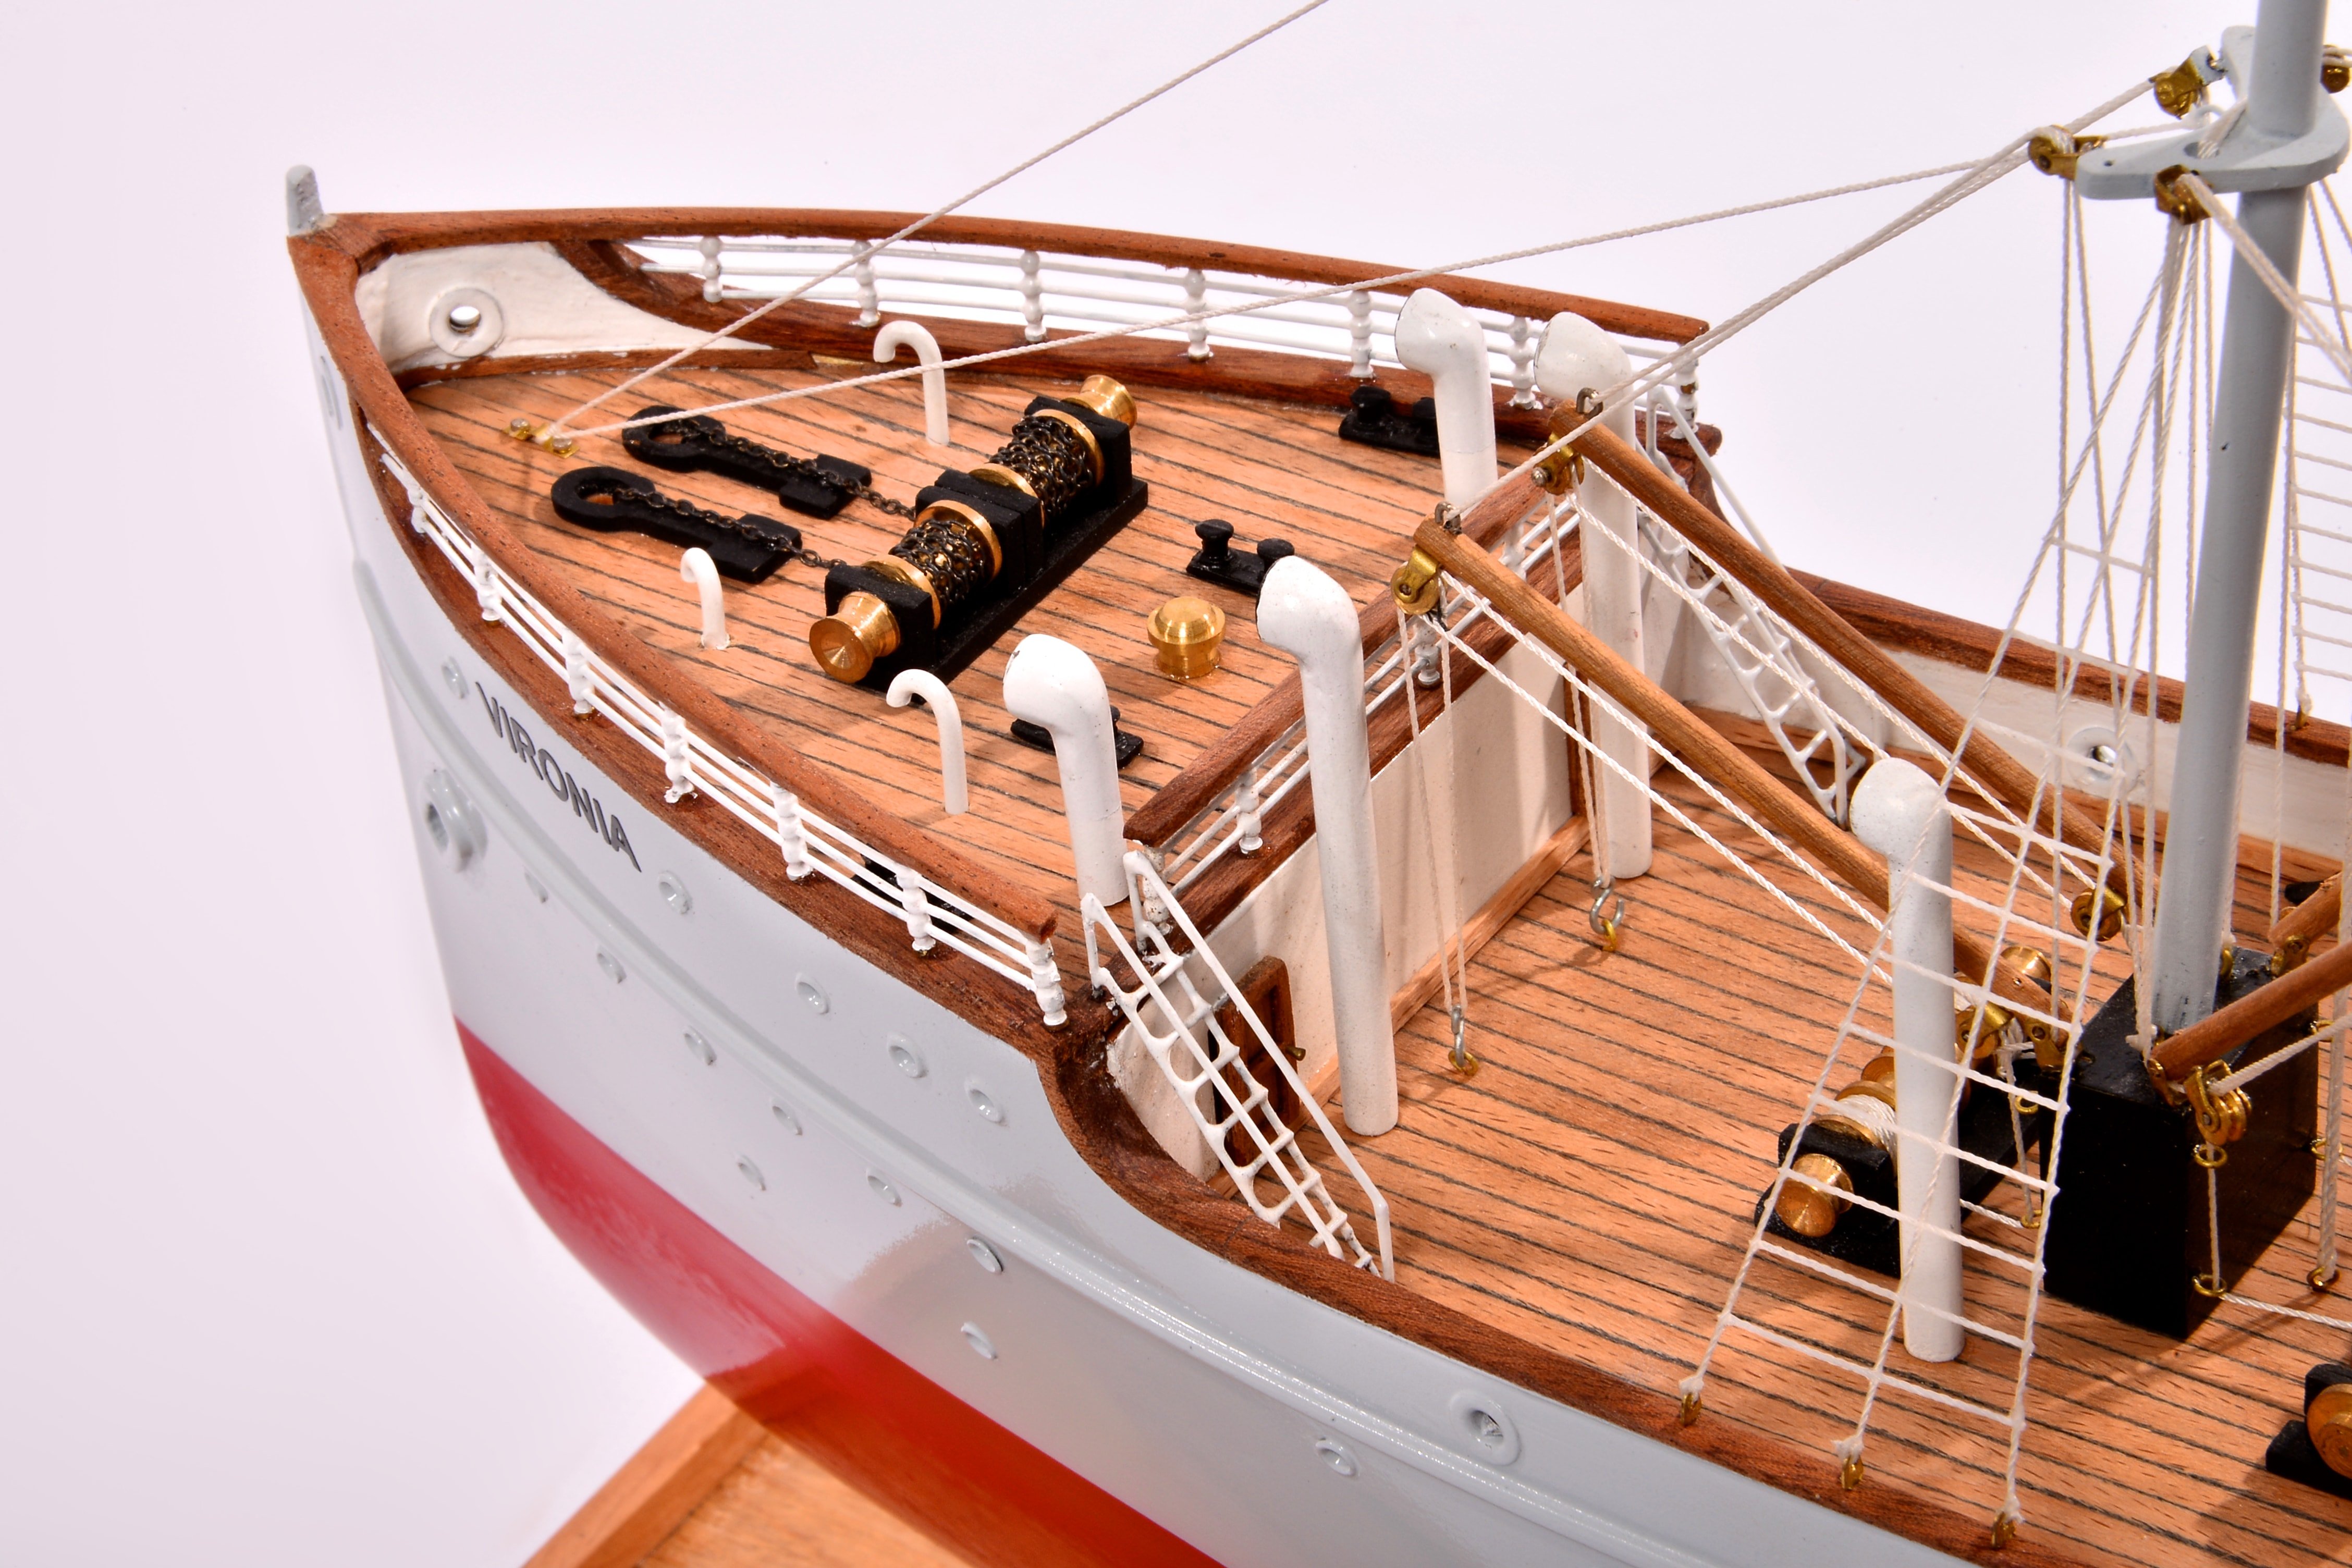 SS Vironia - Maquette de Bateaux